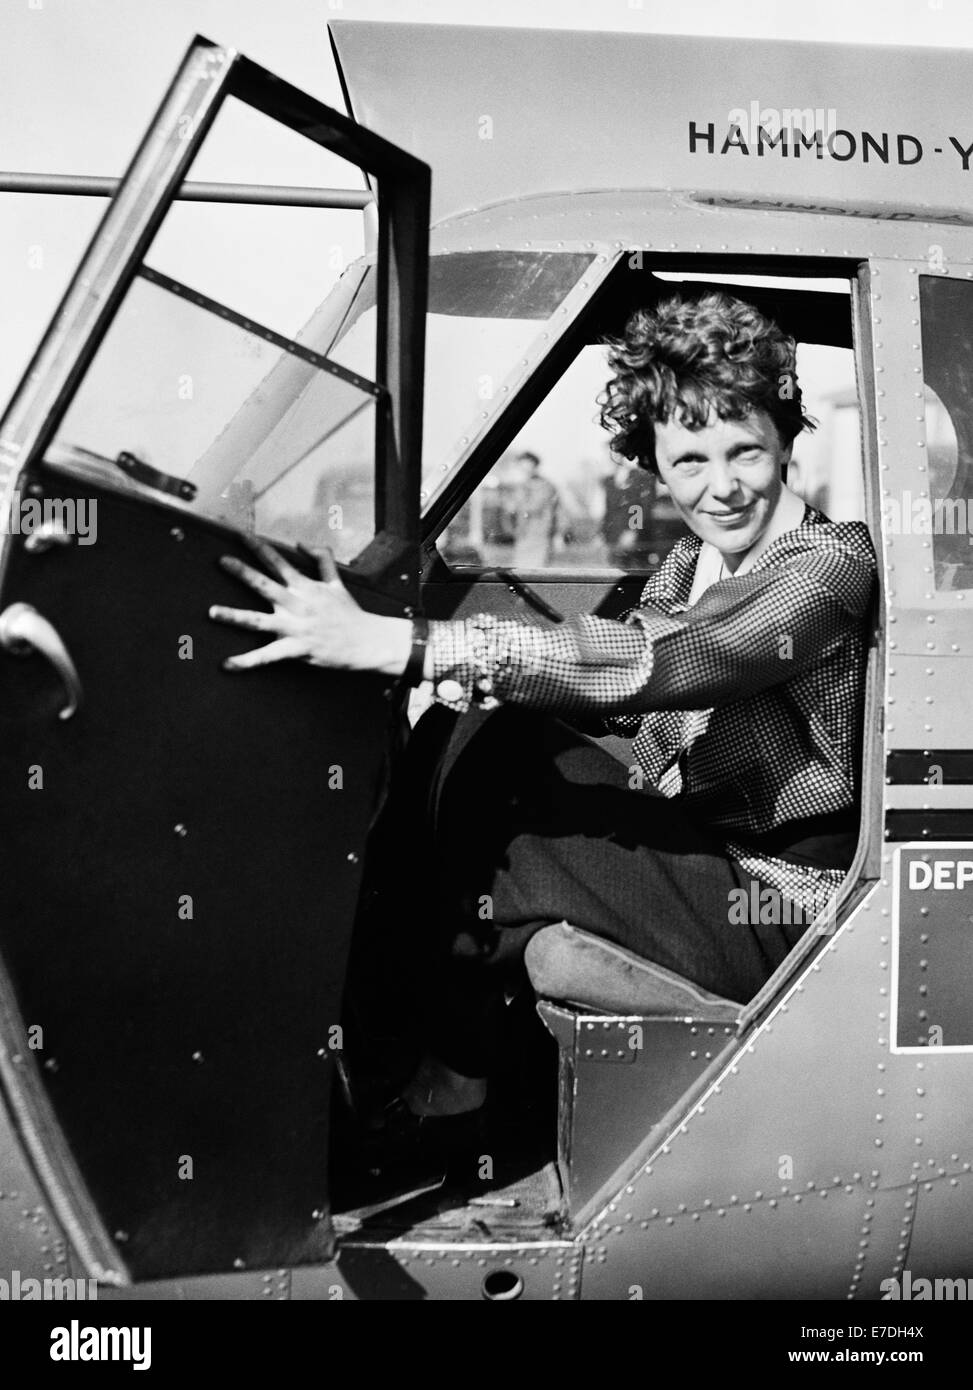 Vintage-Foto der amerikanischen Luftfahrtpionierin und Autorin Amelia Earhart (1897 – 1939 für tot erklärt) – Earhart und ihr Navigator Fred Noonan verschwanden 1937 bekanntermaßen, als sie versuchte, das erste Weibchen zu werden, das einen Rundflug über den Globus absolvierte. Earhart ist im Jahr 1936 im Cockpit eines US-Handelsministeriums abgebildet. Stockfoto